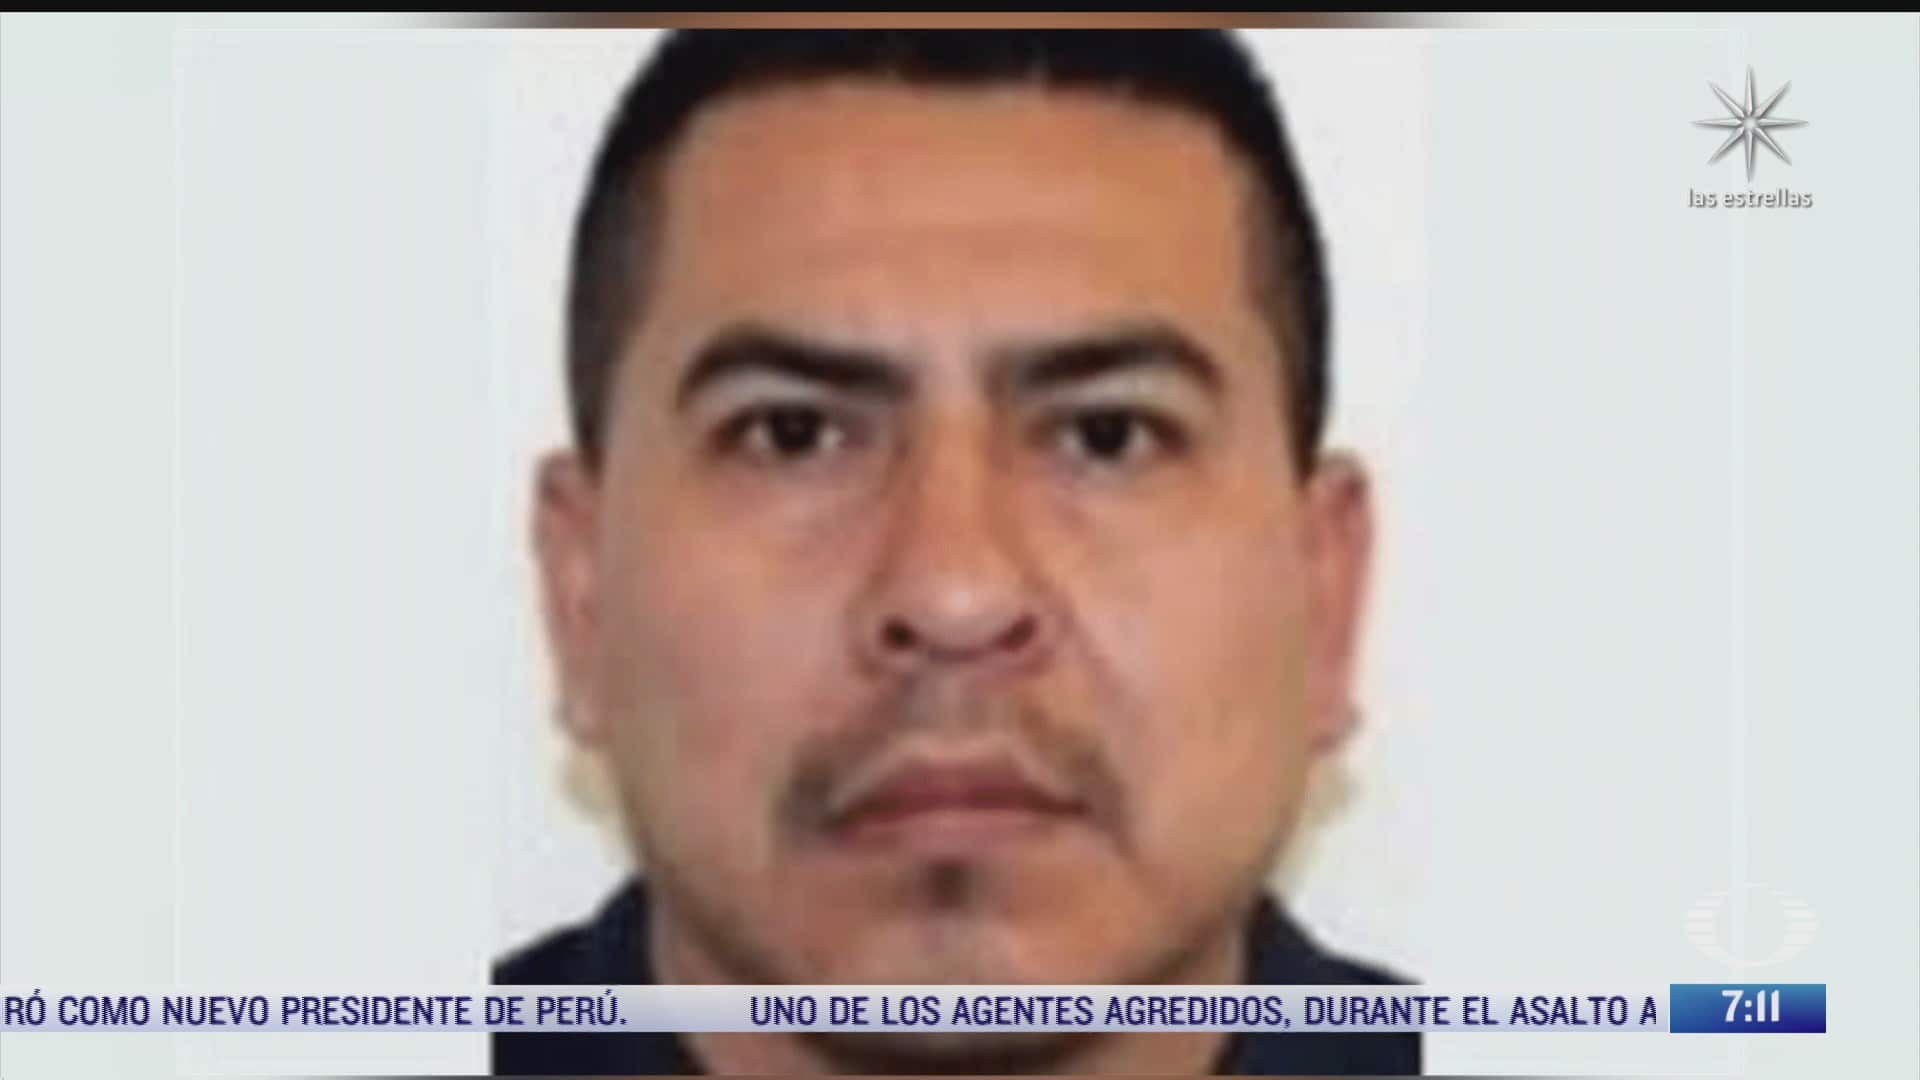 quien es el maestrin presunto responsable de la masacre en tamaulipas y que fue asesinado